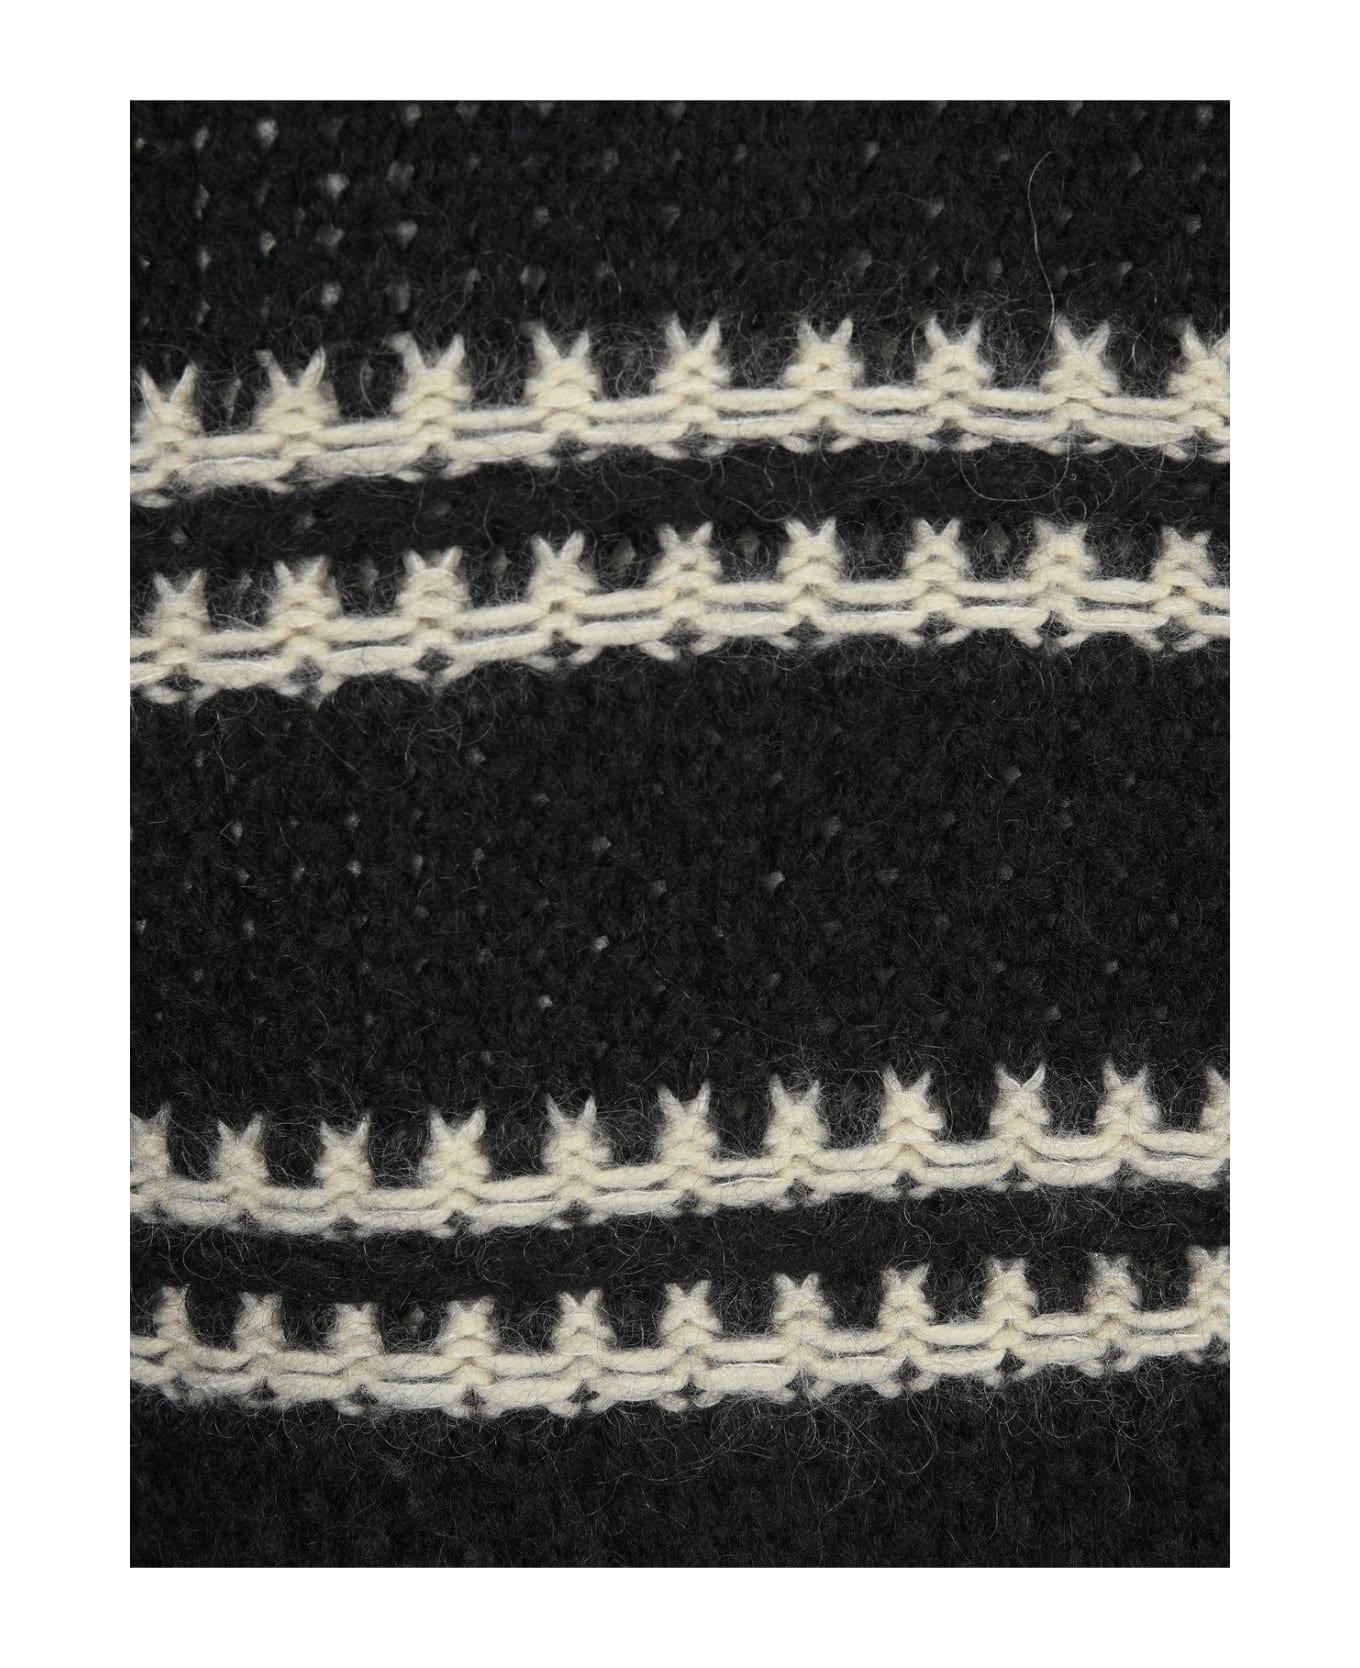 Saint Laurent Striped Turtleneck Knit Jumper - BLACK